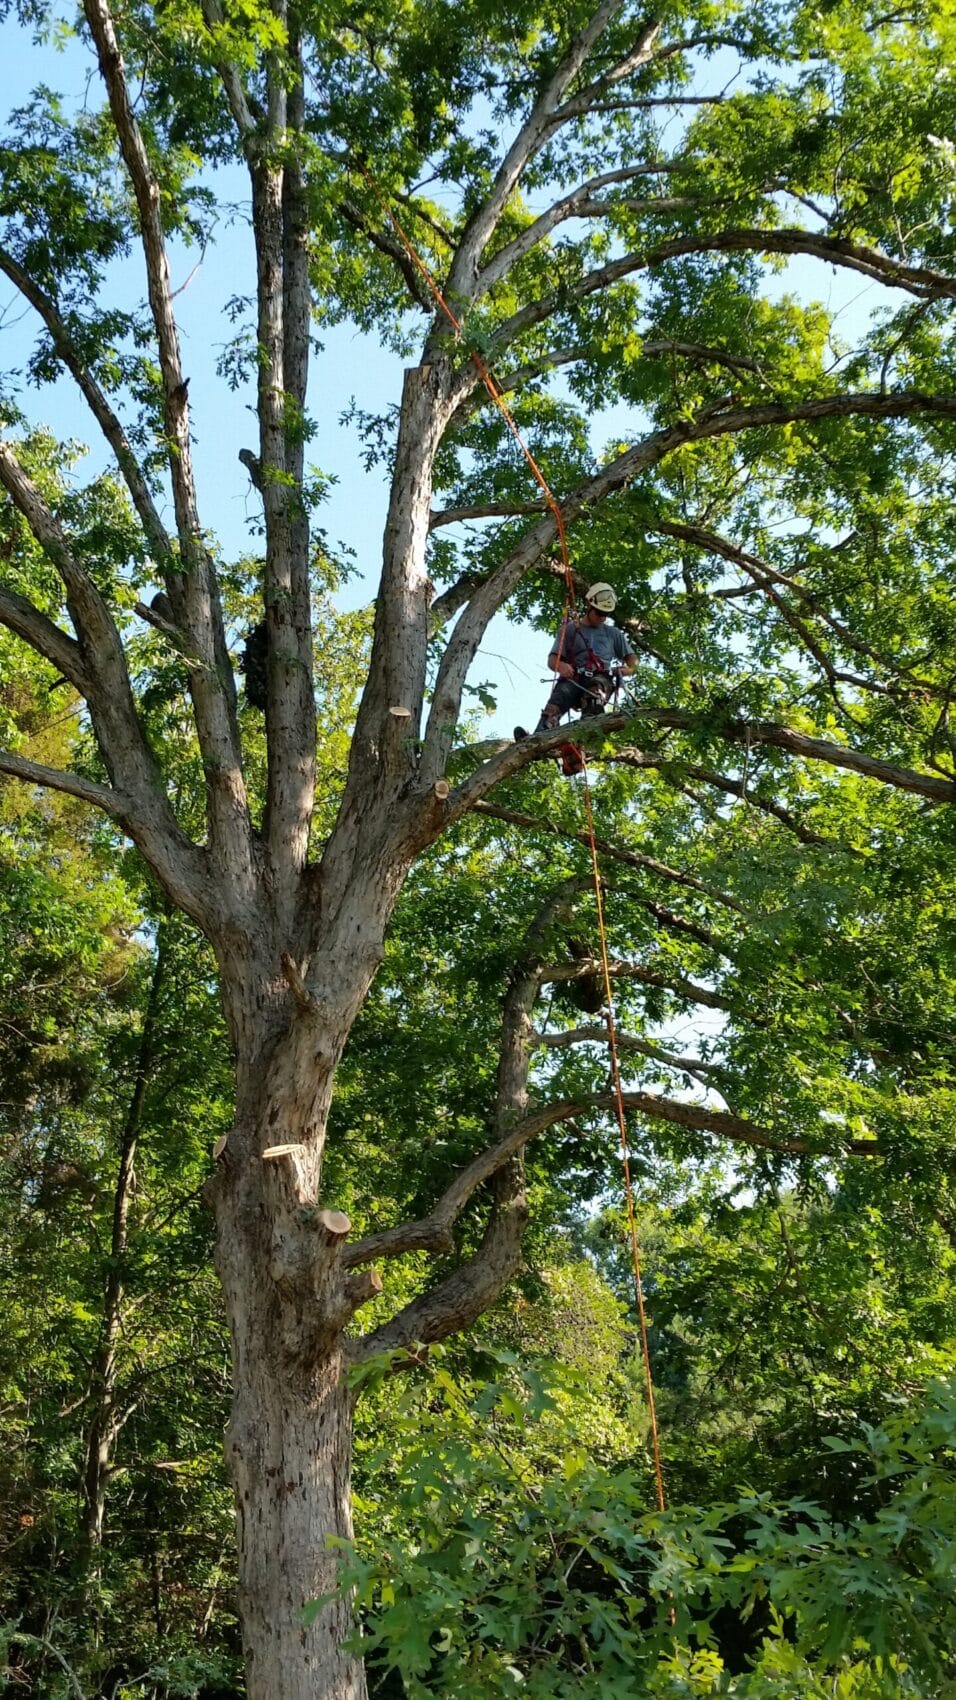 Tree trimming / pruning